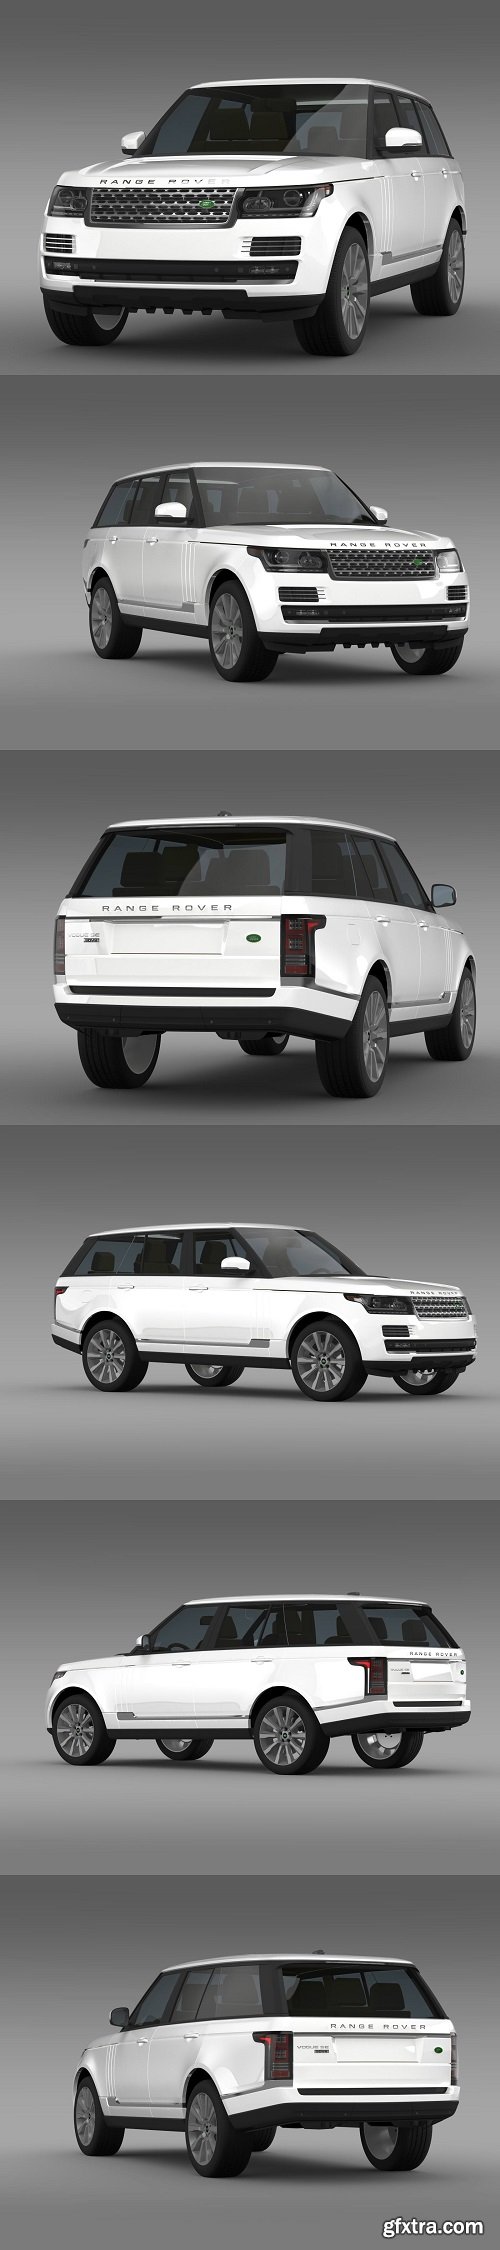 Range Rover Vogue SE SDV8 L405 3D model